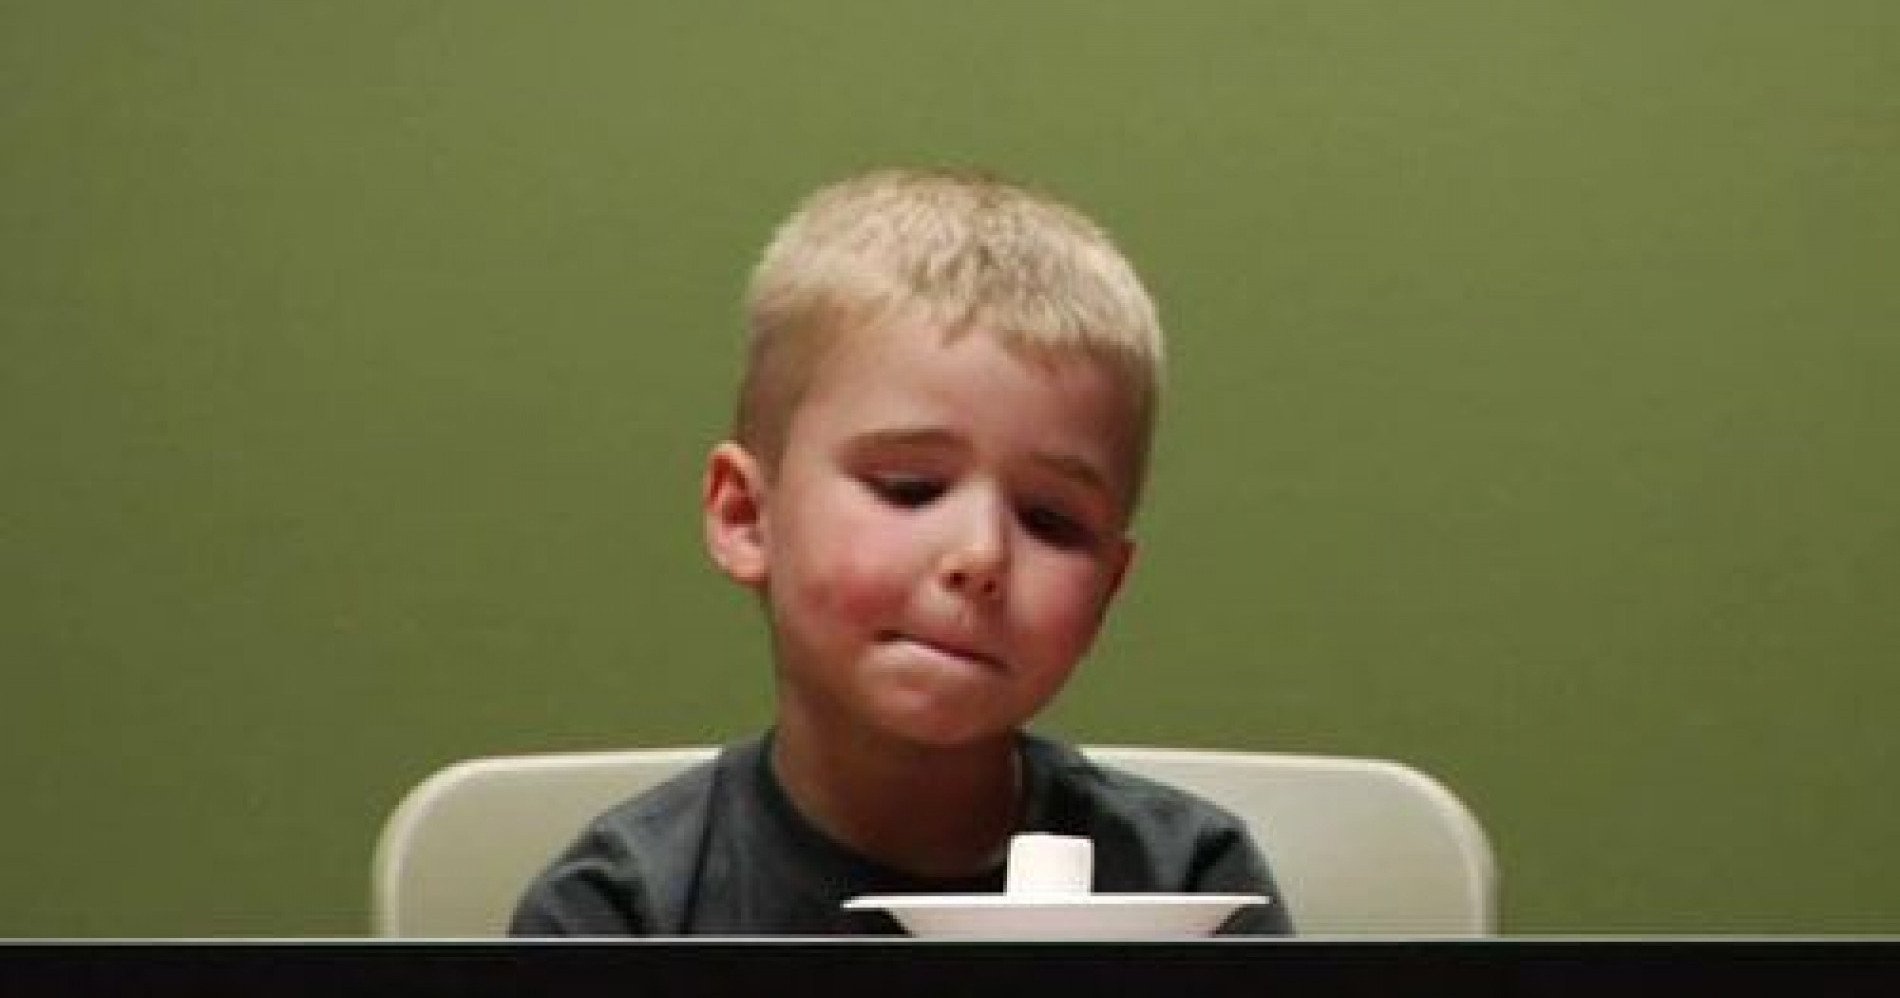 Eksperimen marshmallow mengajarkan kita untuk mengontrol emosi saat berinvestasi (Sumber Gambar: Shutterstock)